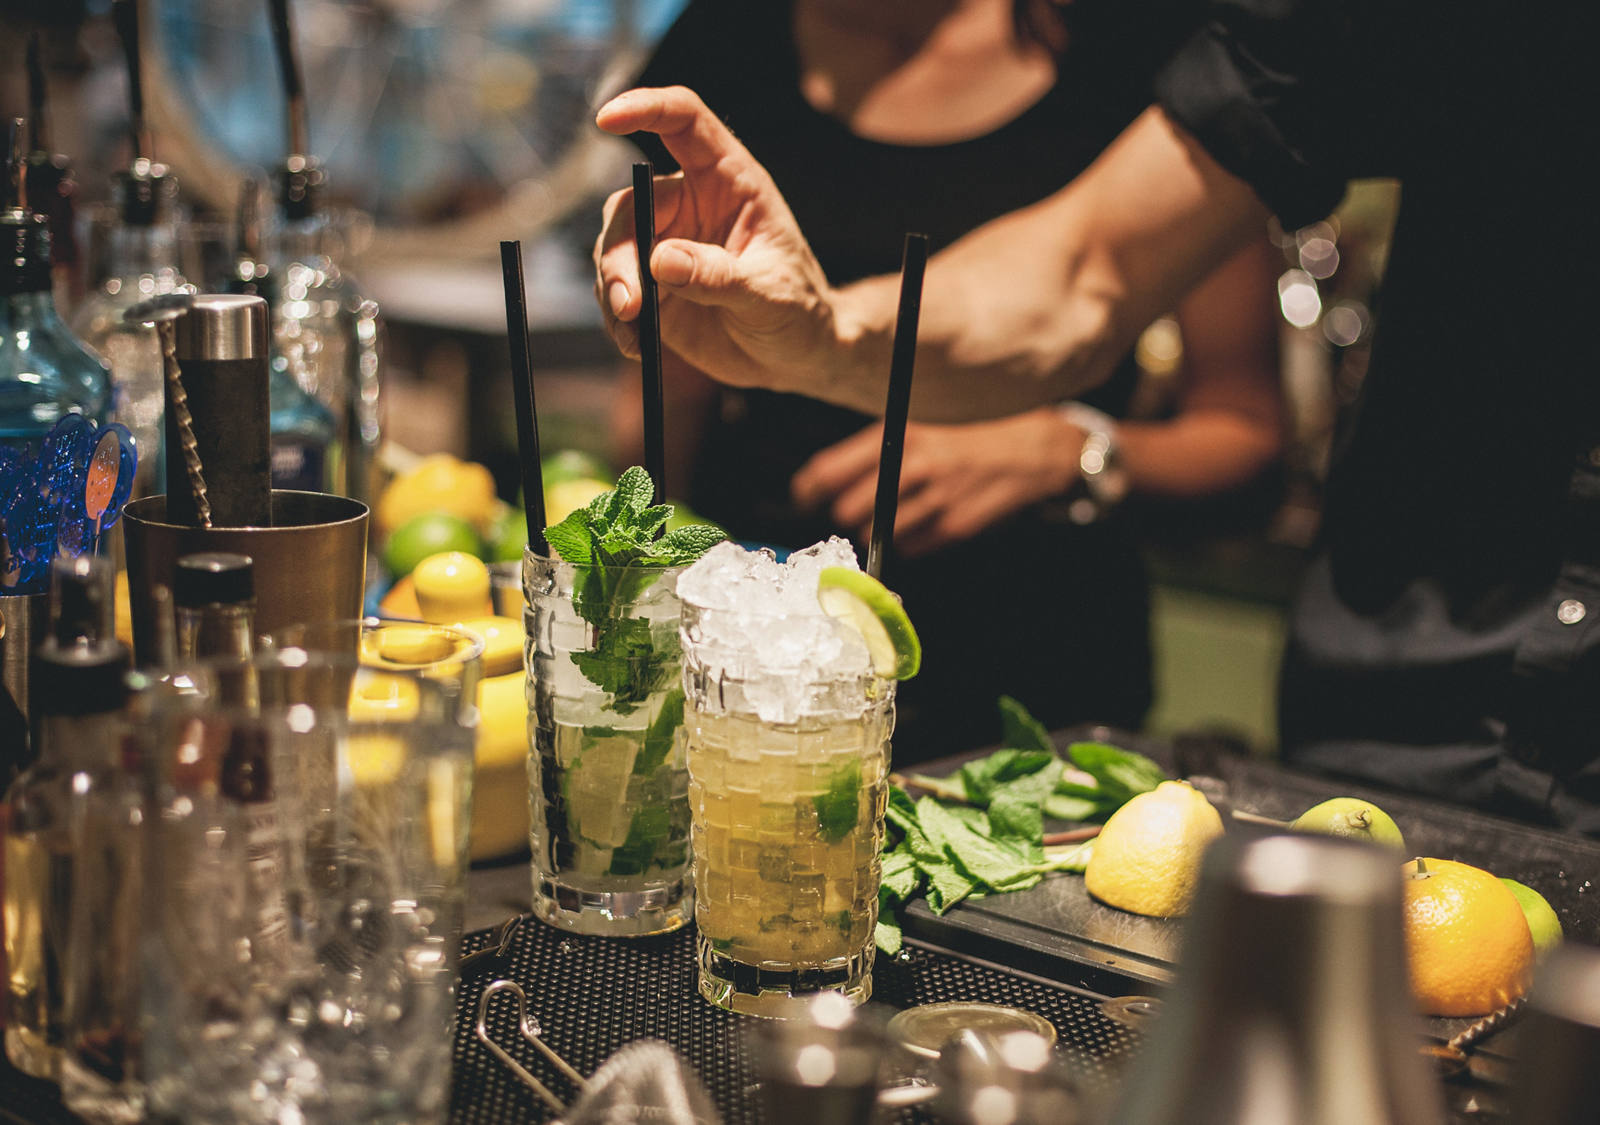 Mocktail: Das Bar-Personal bereitet ein alkoholfreies Getränk mit Zitrone und Minze vor.